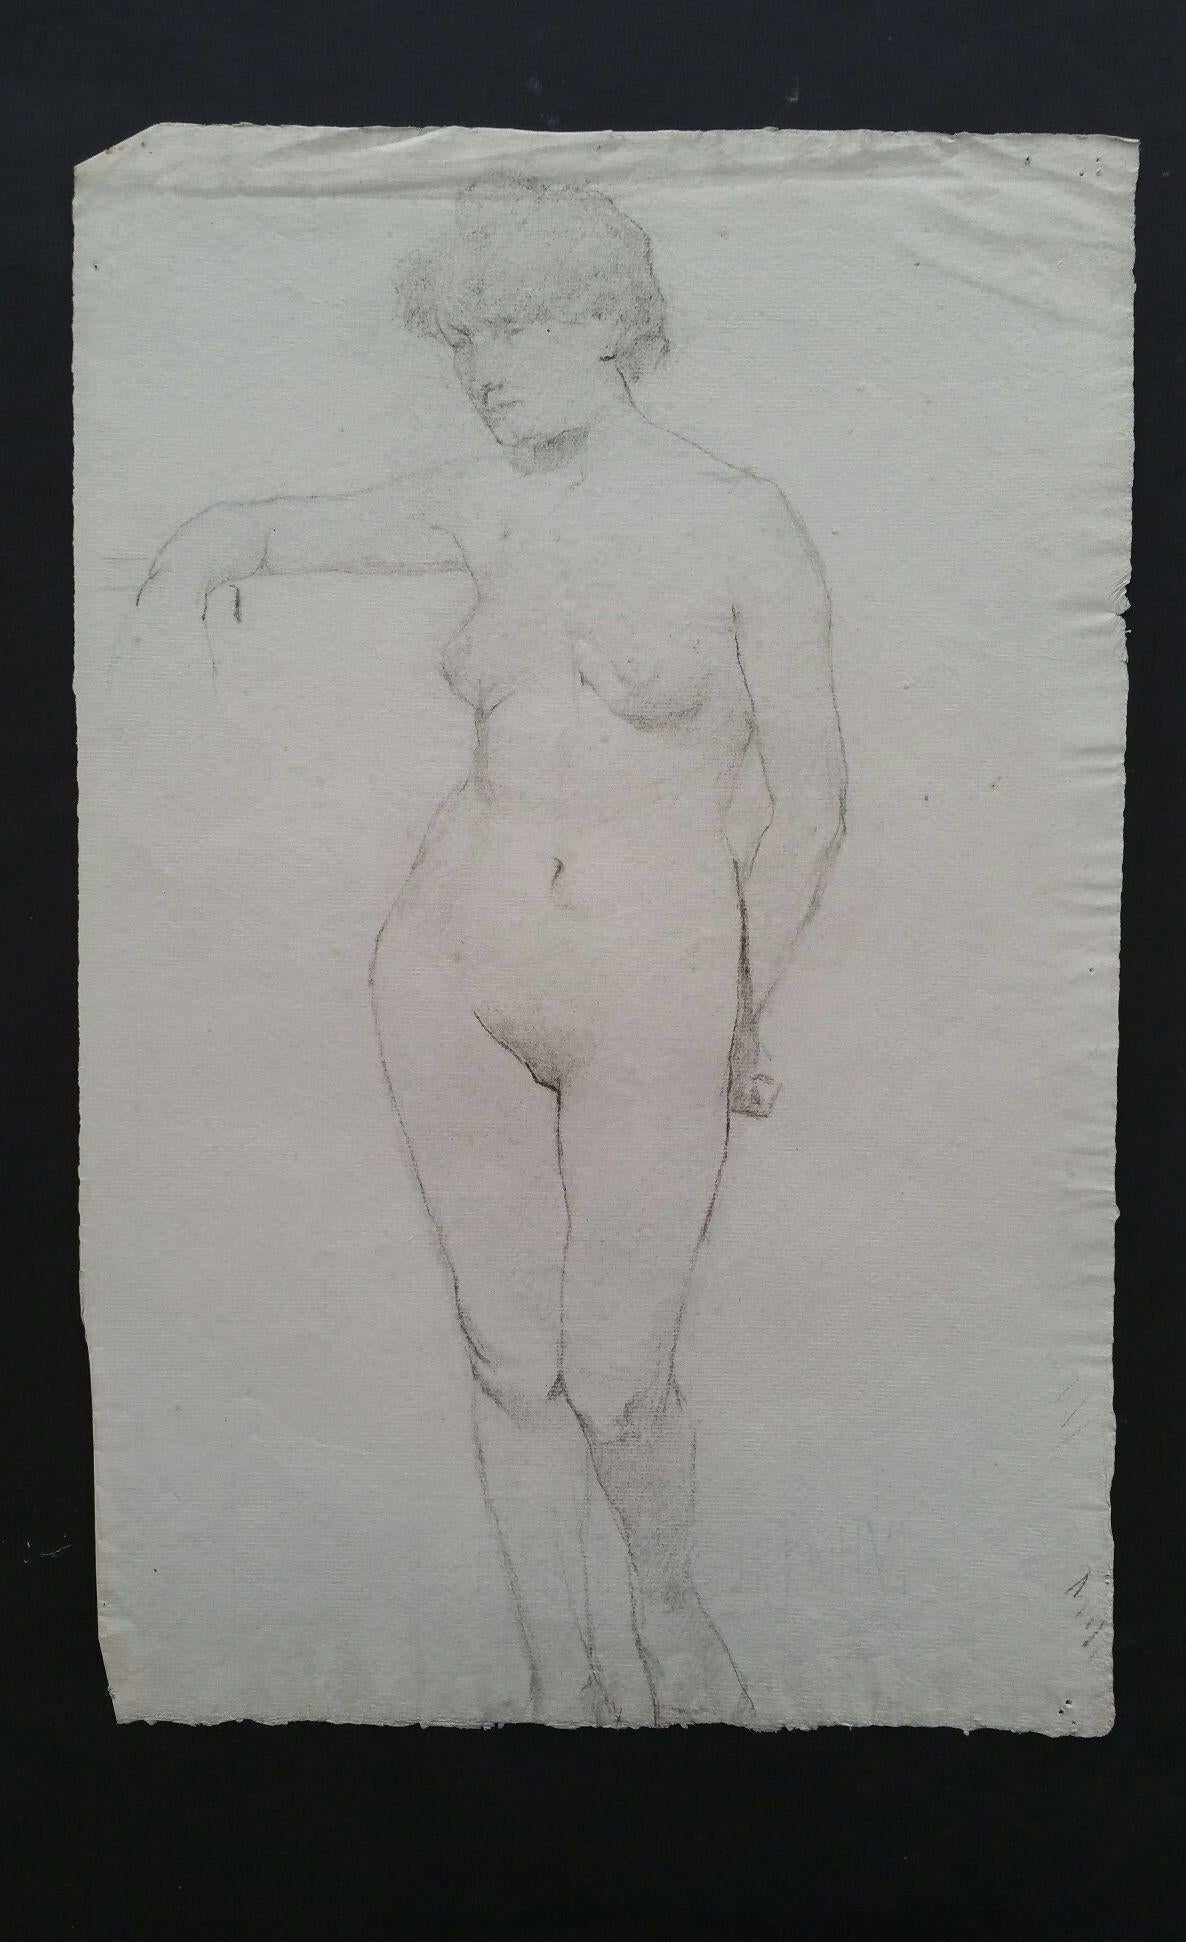 Esquisse en graphite anglais d'une femme nue, debout, faisant face à l'autre
par Henry George Moon (britannique, 1857-1905)
sur papier d'artiste blanc cassé, non encadré
mesures : feuille 18.5 x 12 pouces 

provenance : de la succession de